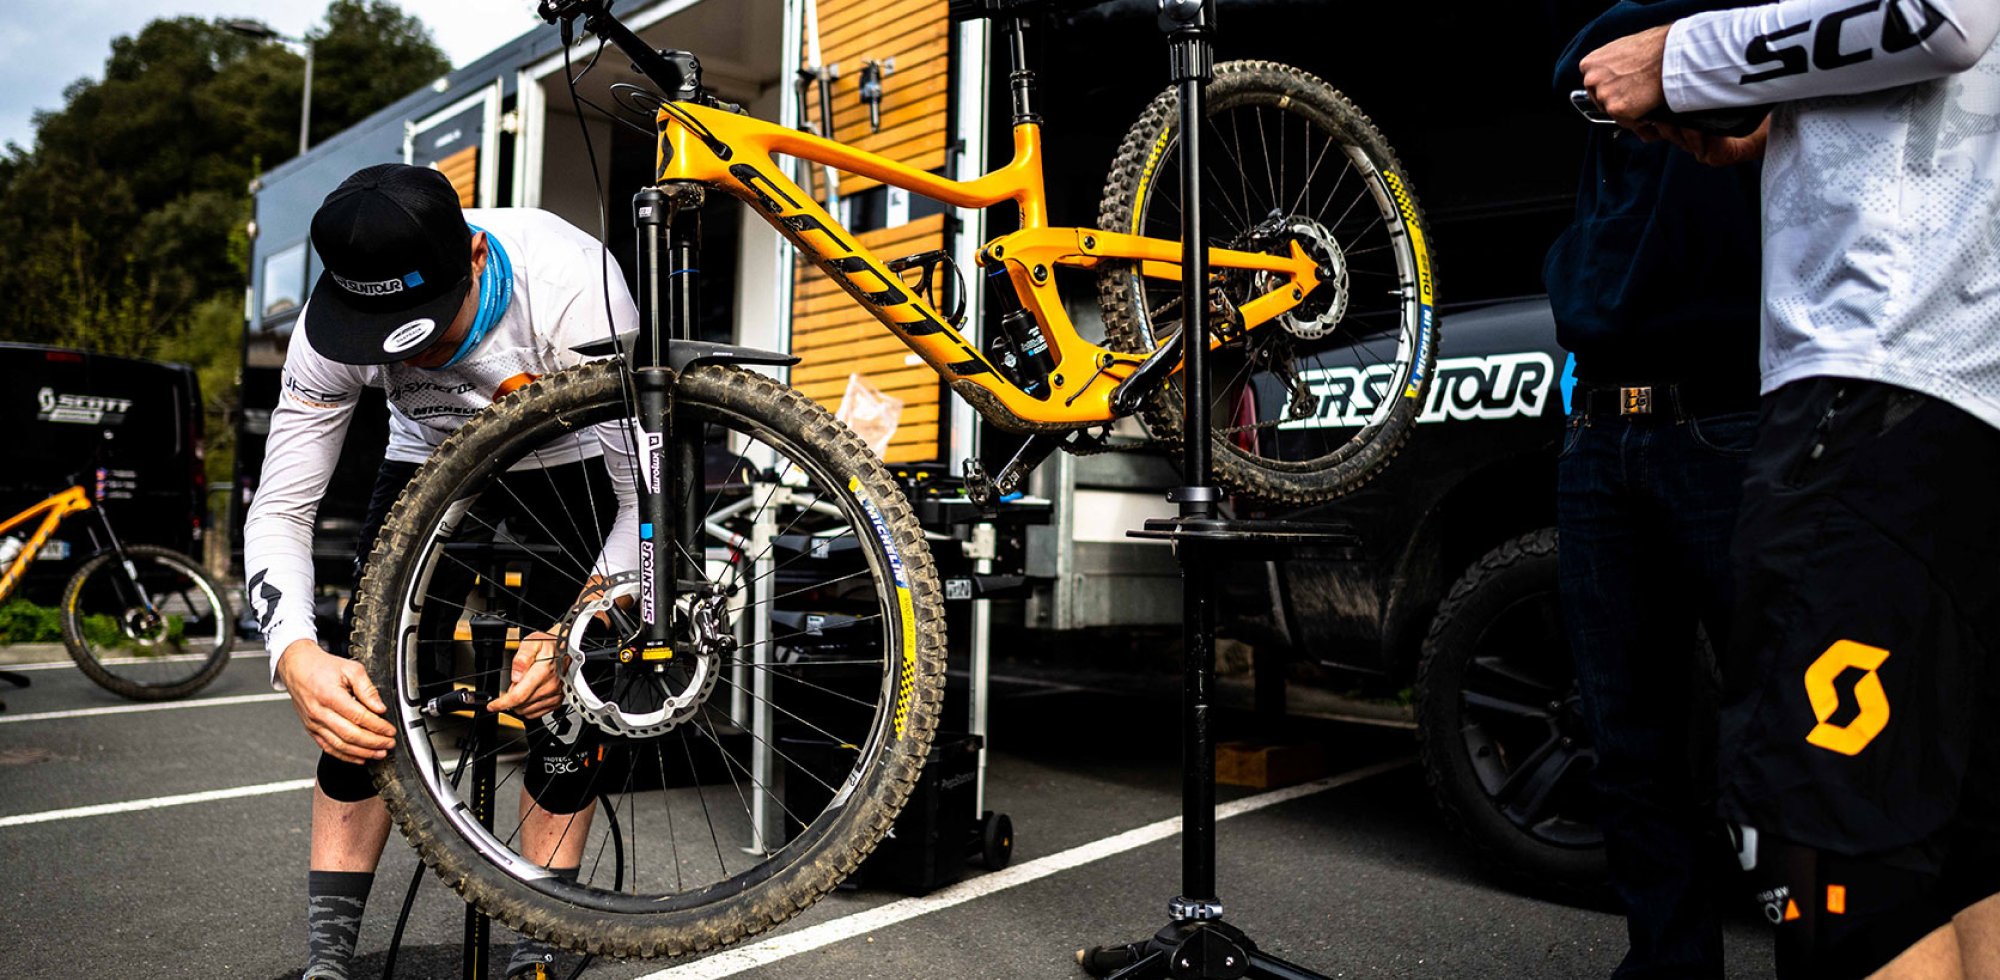 Scott mountain bike clamped in a repair stand